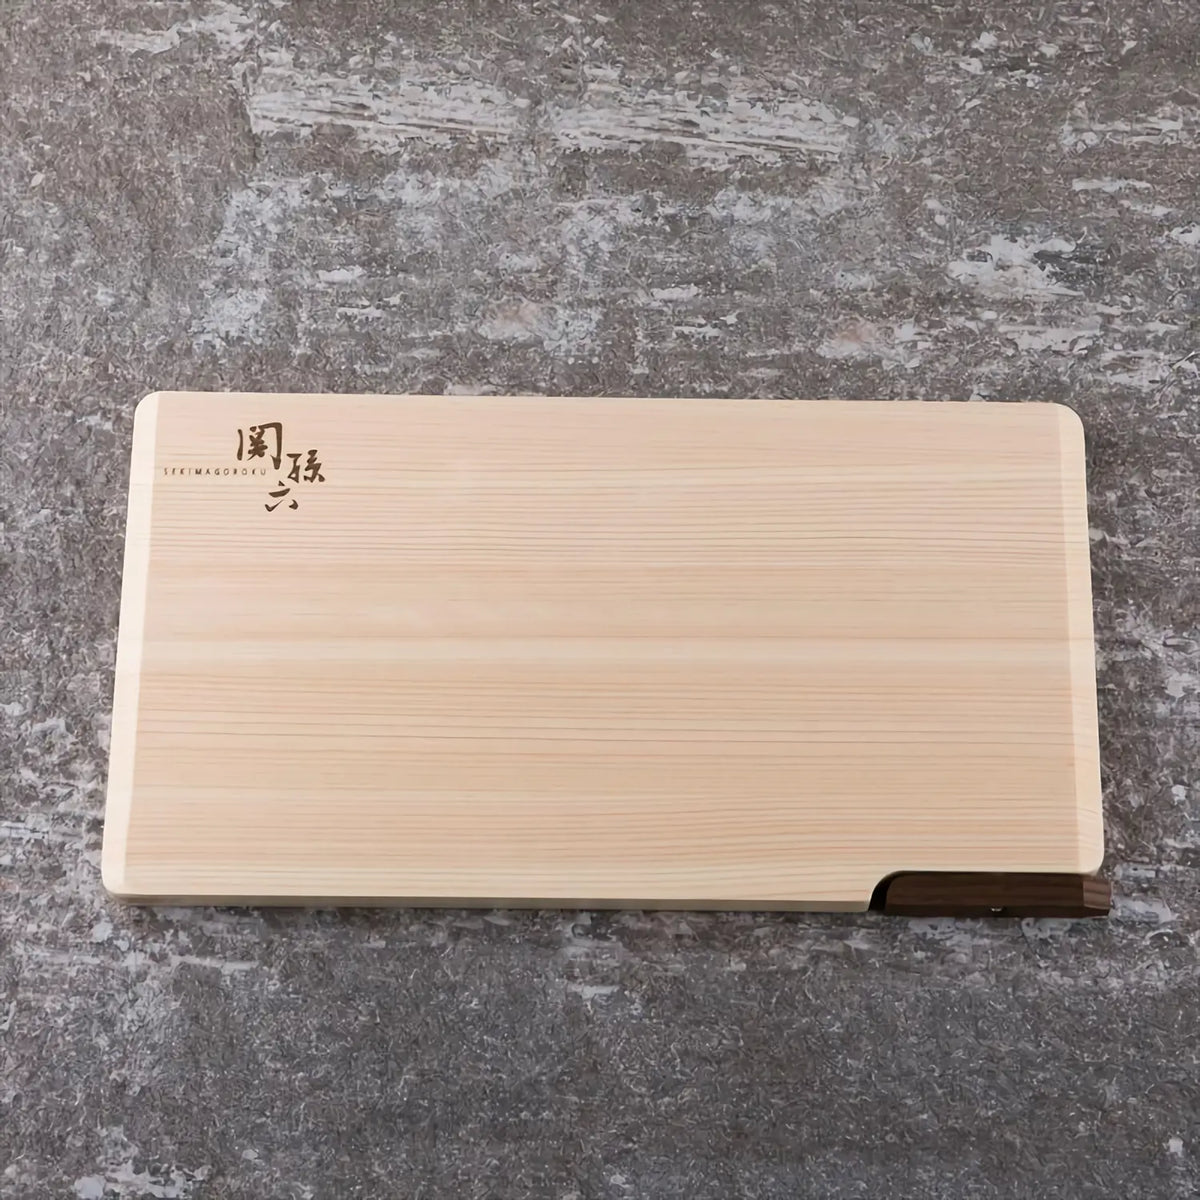 Seki Magoroku Hinoki Cypress Wood Cutting Board with Stand